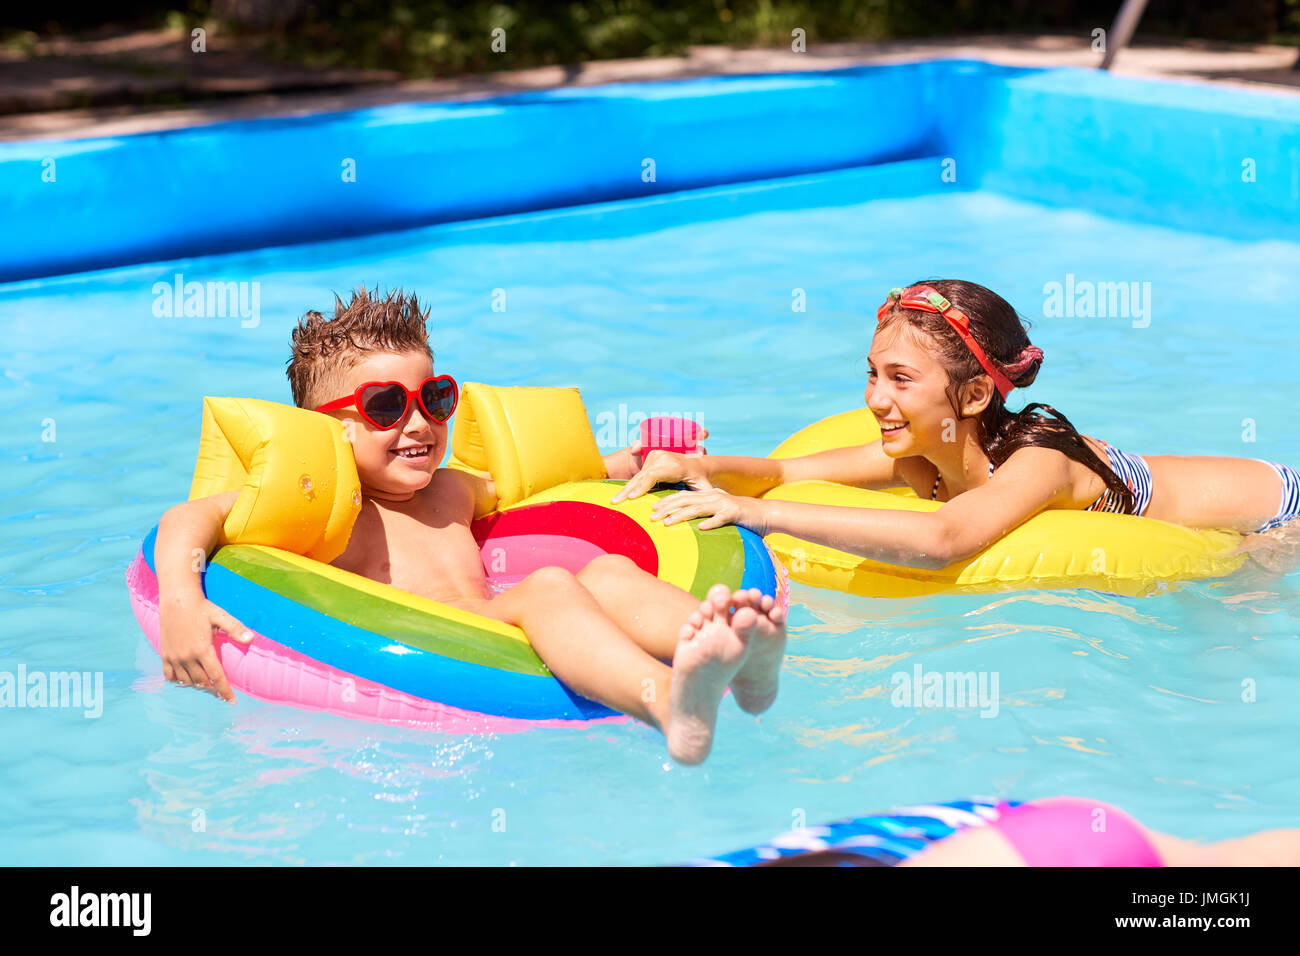 Los niños juegan en trajes de baño en la piscina en el verano. Foto de stock